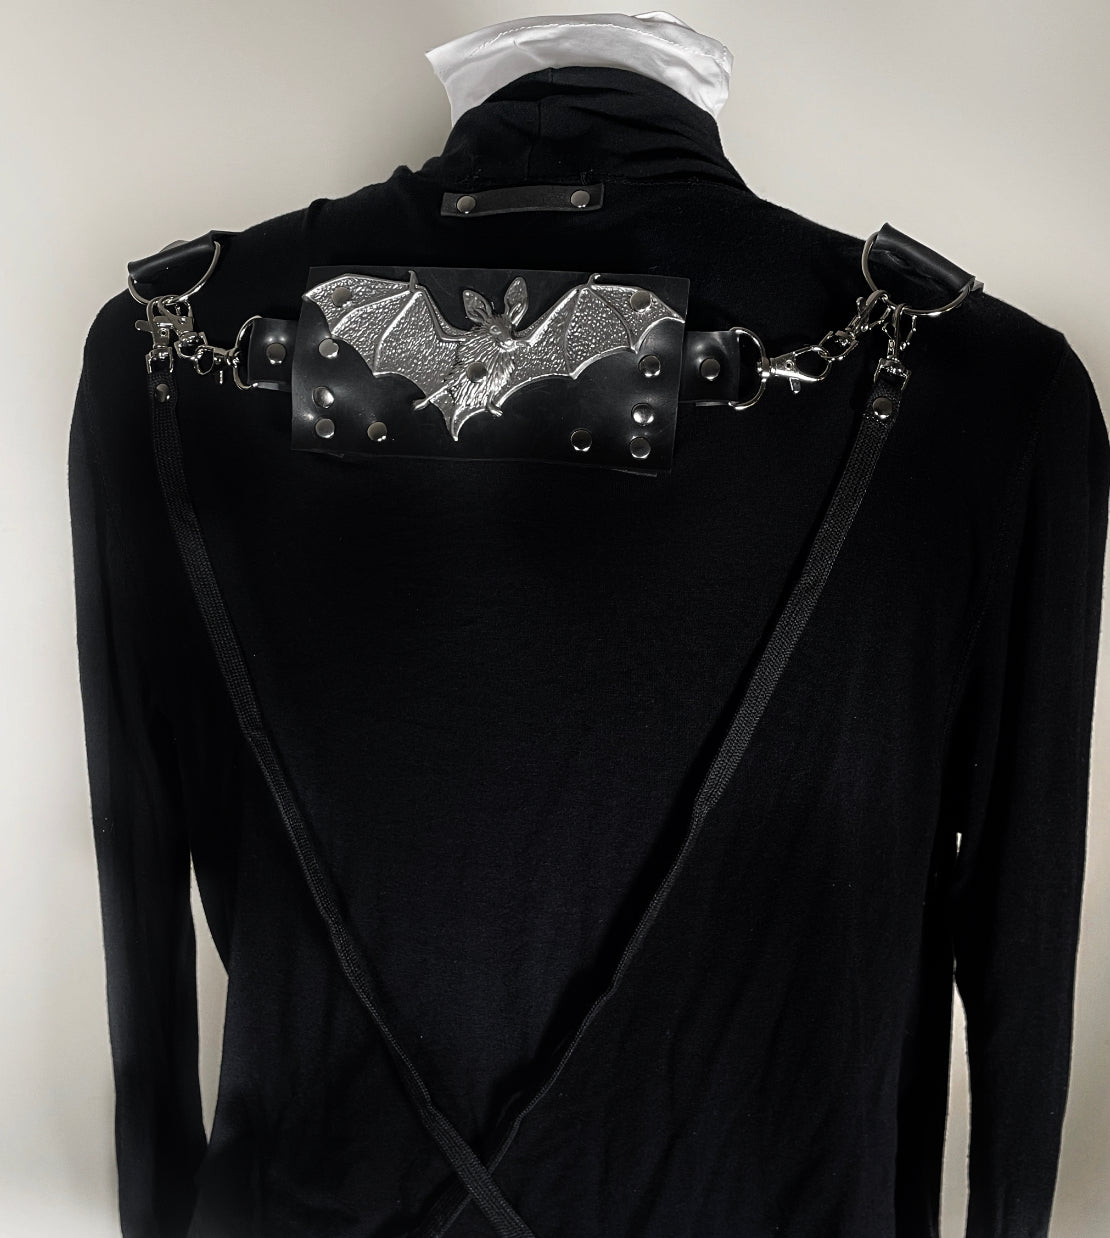 Black Bat Jacket with Harness/Bondage Straps